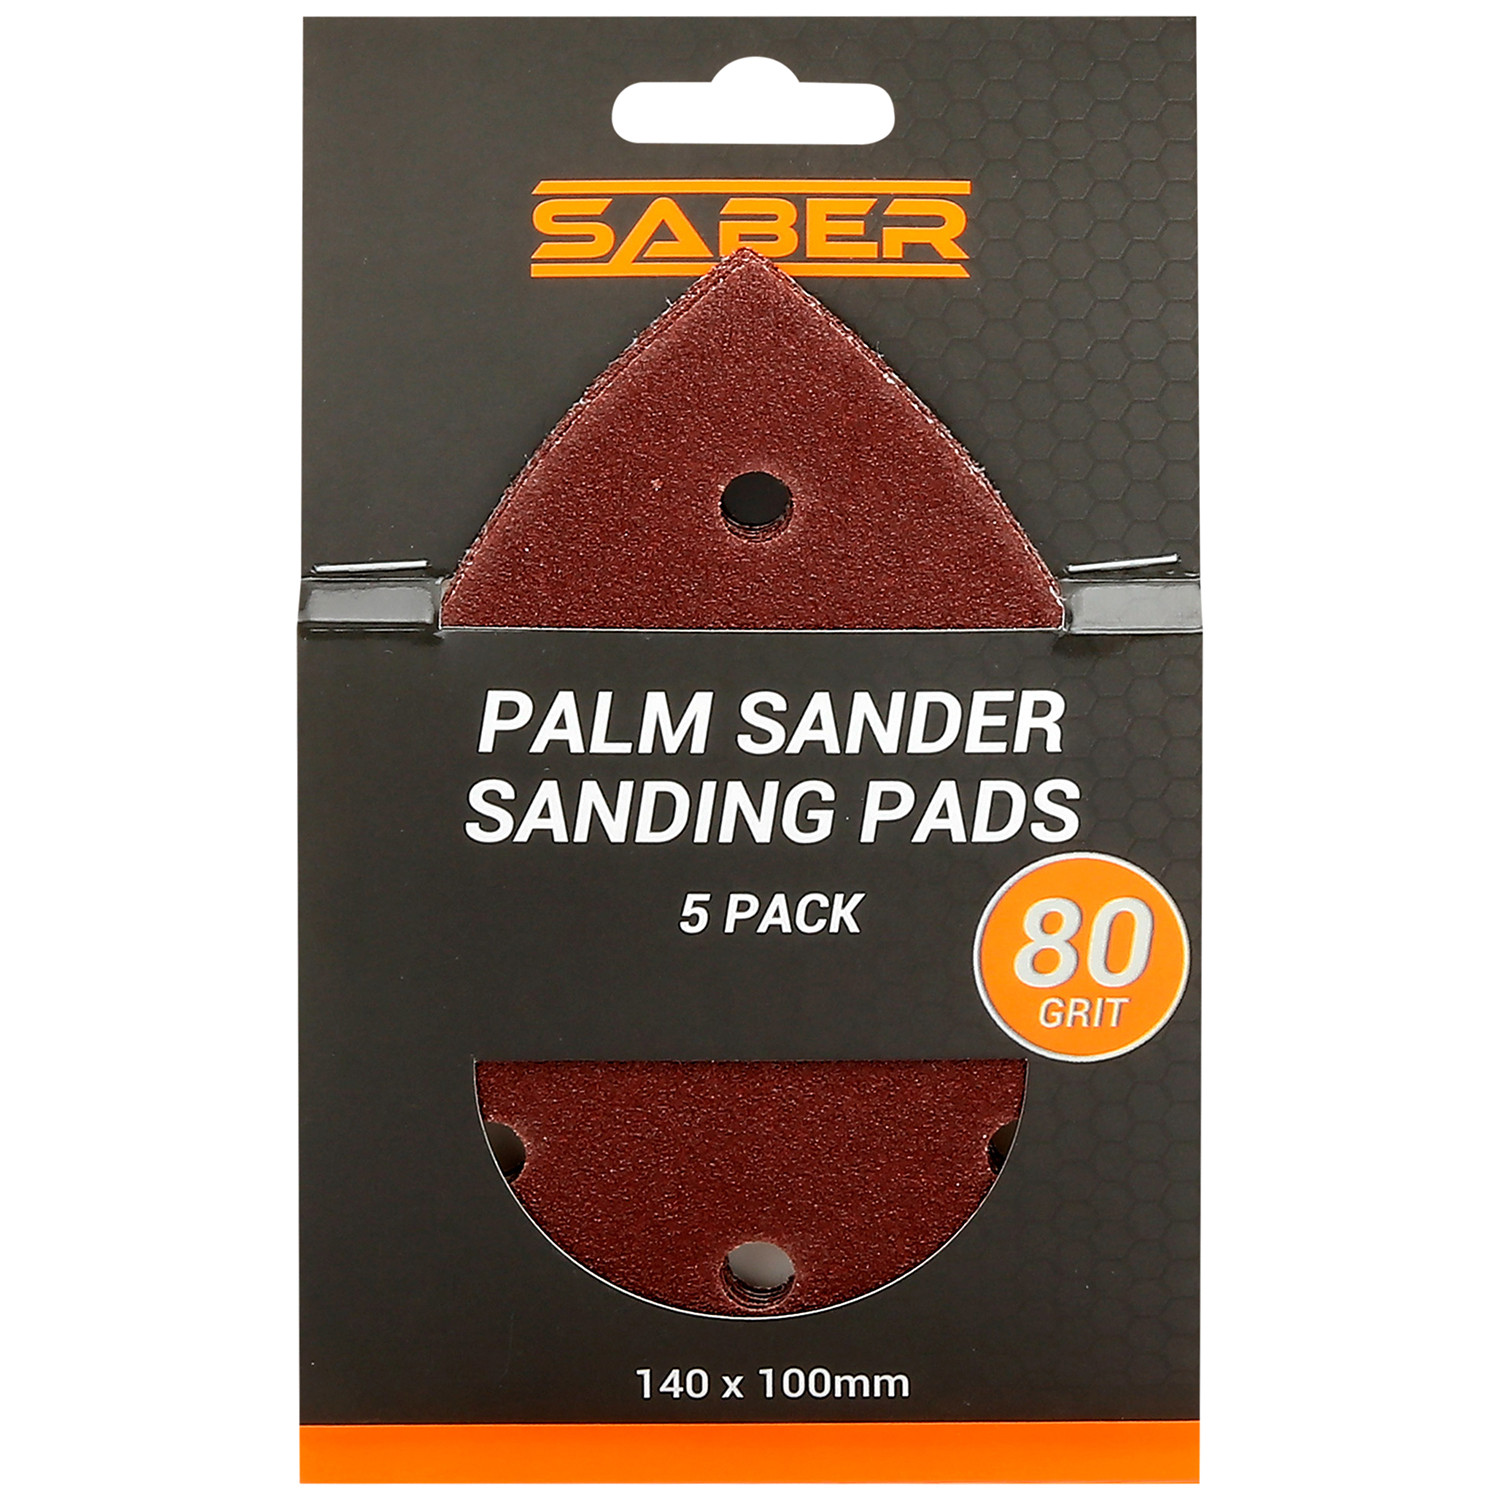 Saber Palm Sander Sanding Pads 5 Pack Image